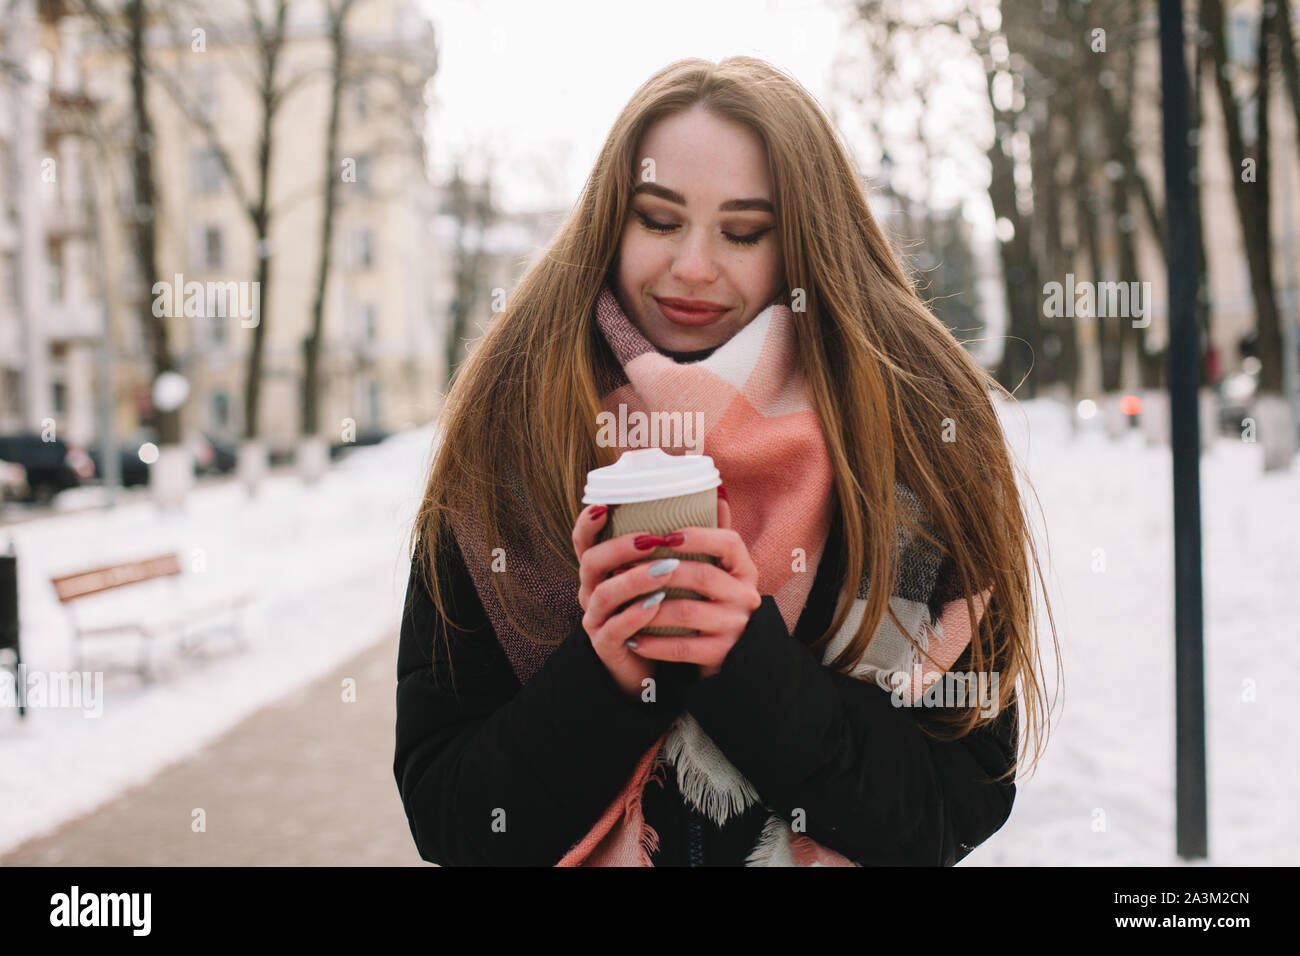 Feliz joven con copa desechable vistiendo ropa de abrigo mientras caminaba por las calles de la ciudad durante el invierno Foto de stock